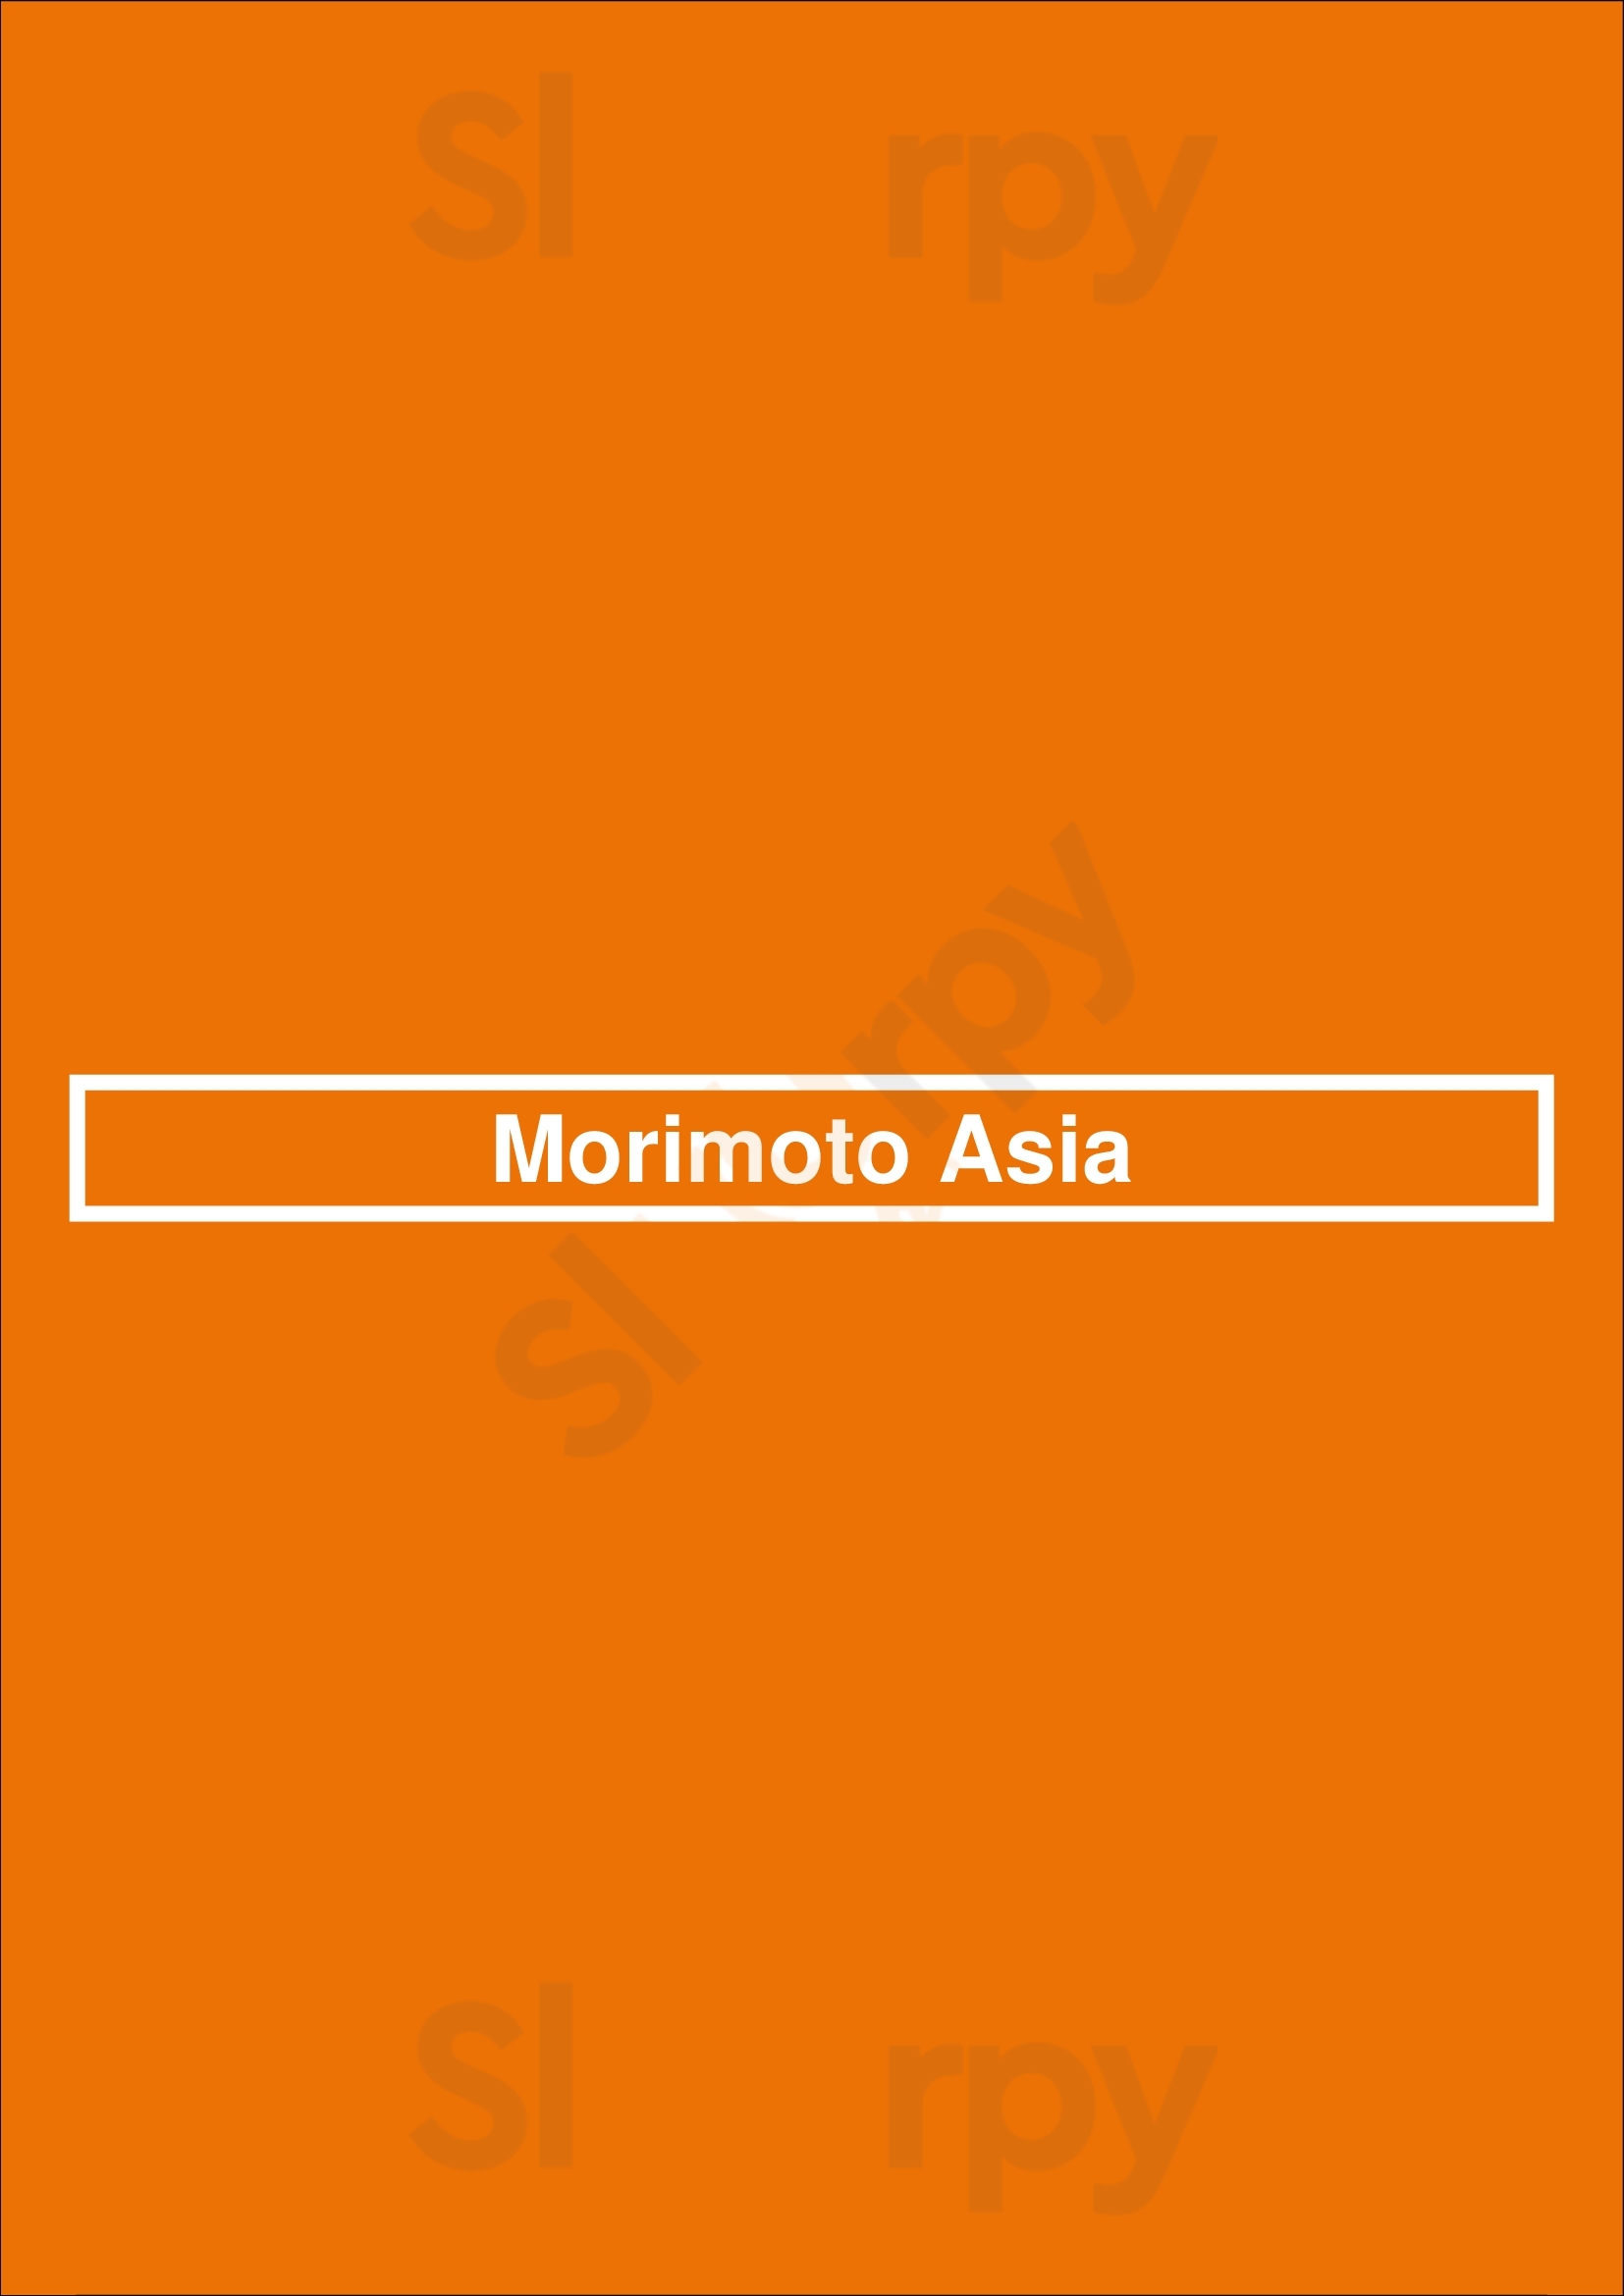 Morimoto Asia Waikiki Honolulu Menu - 1